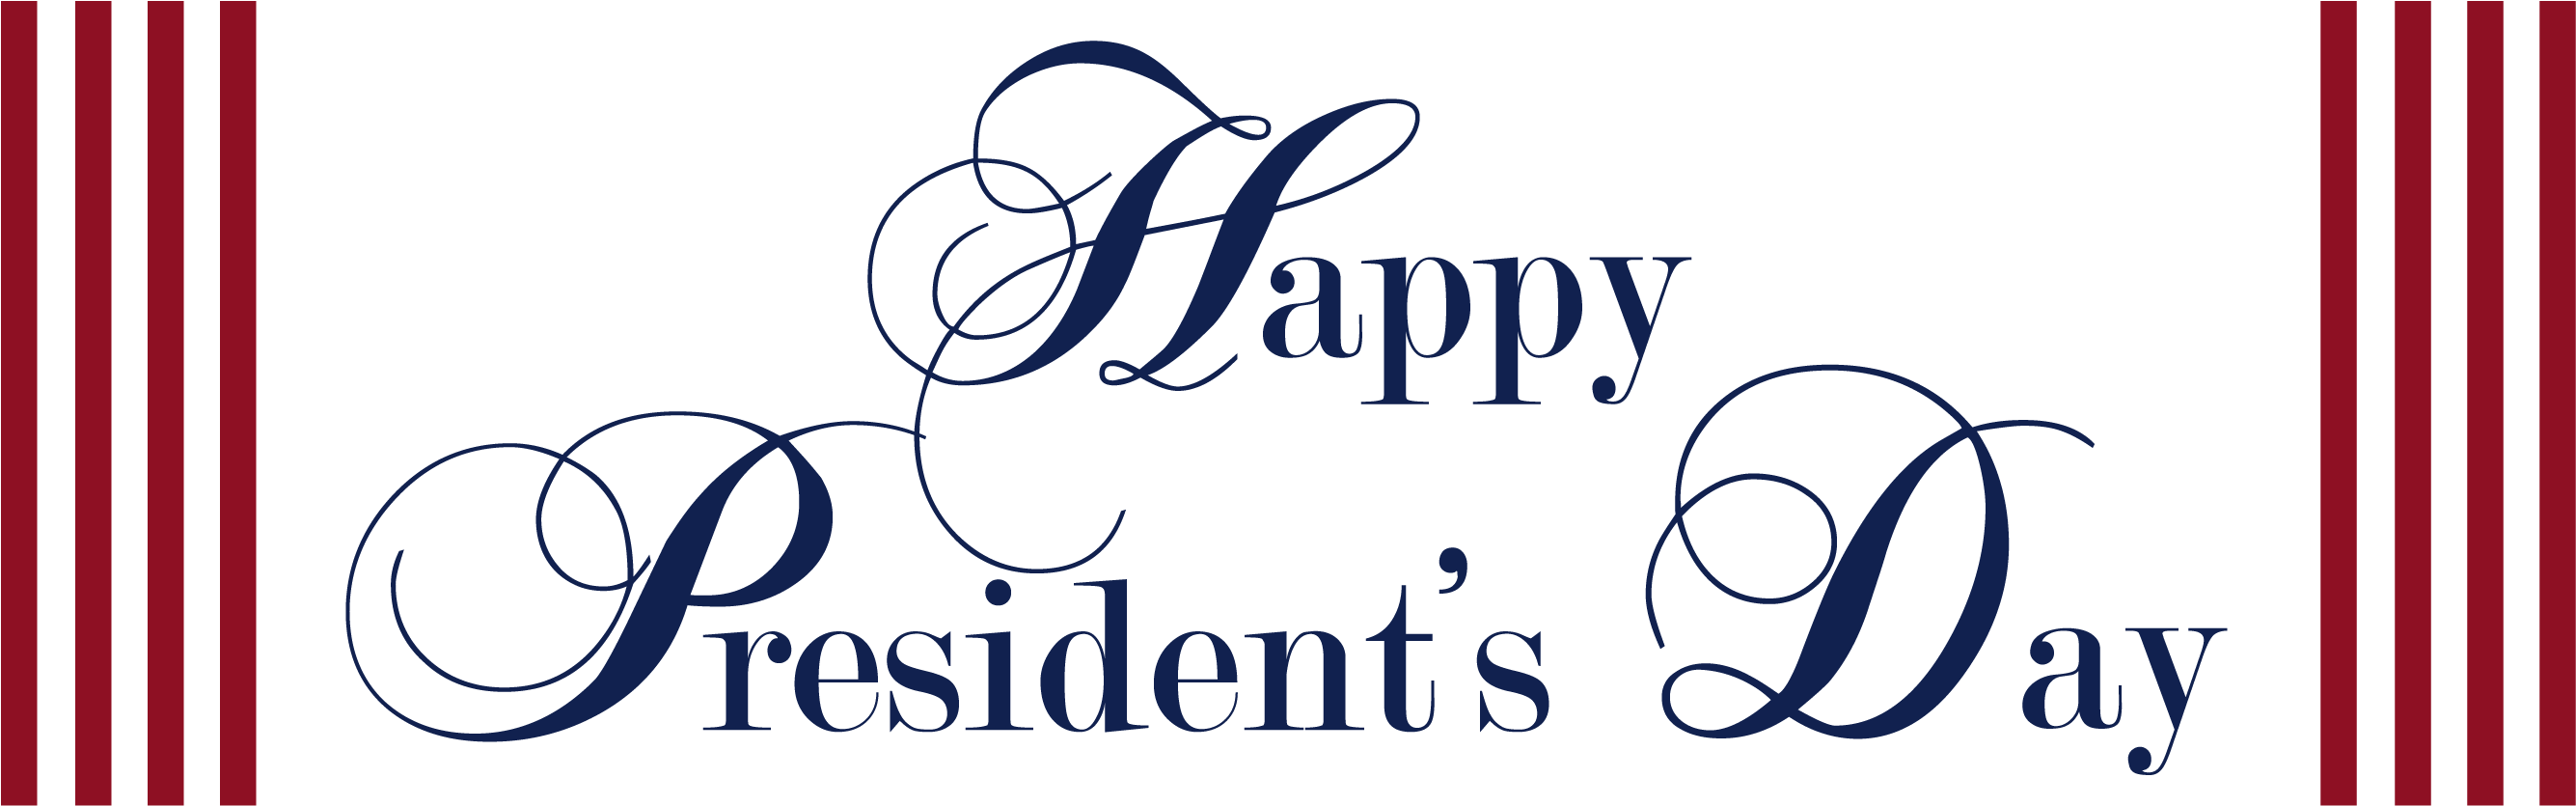 Immagine di PNG del giorno dei presidenti felici